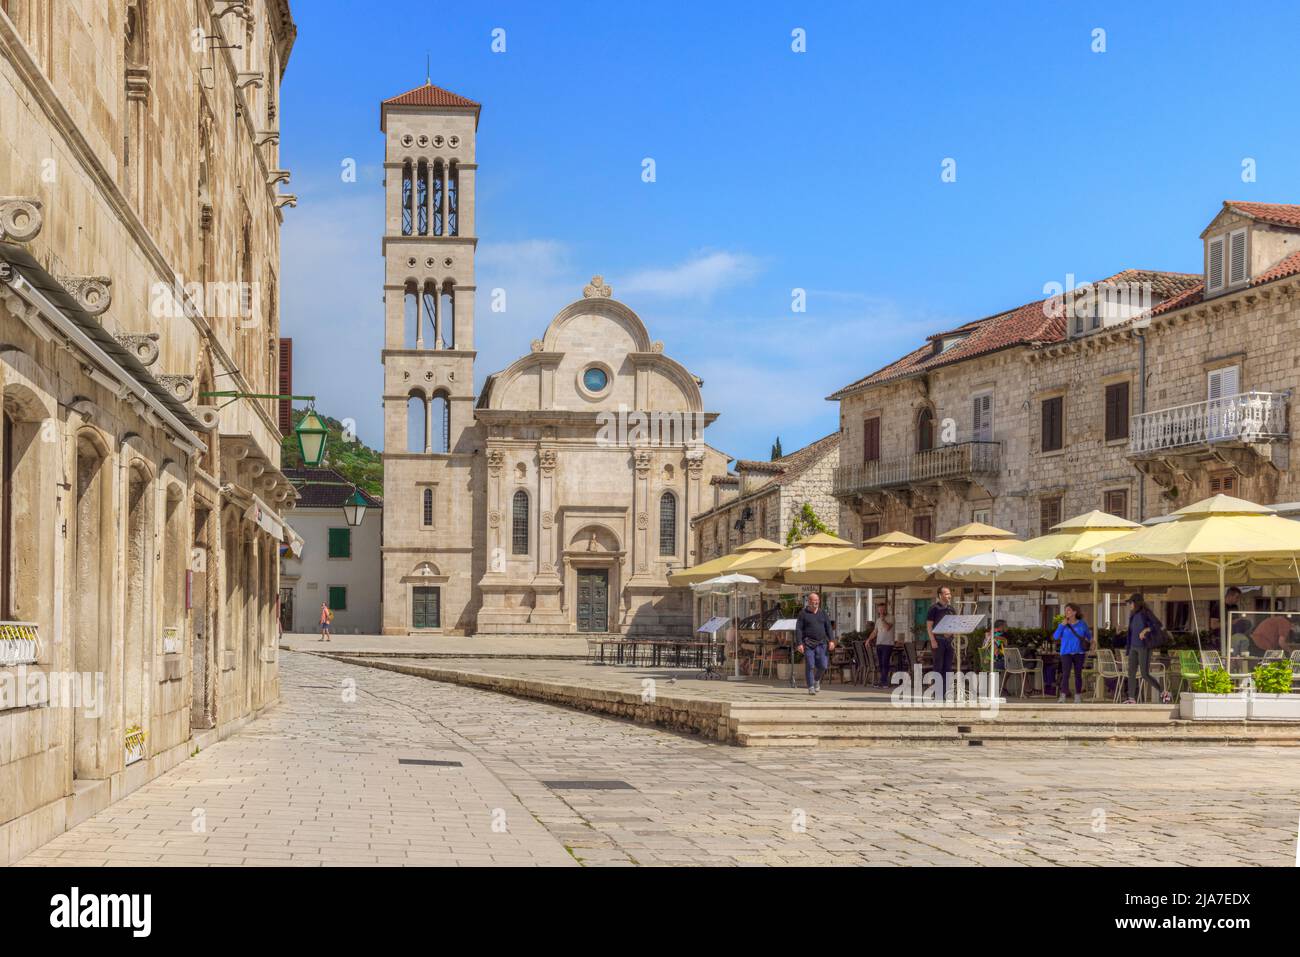 Hvar town, Dalmatia, Croatia, Europe Stock Photo